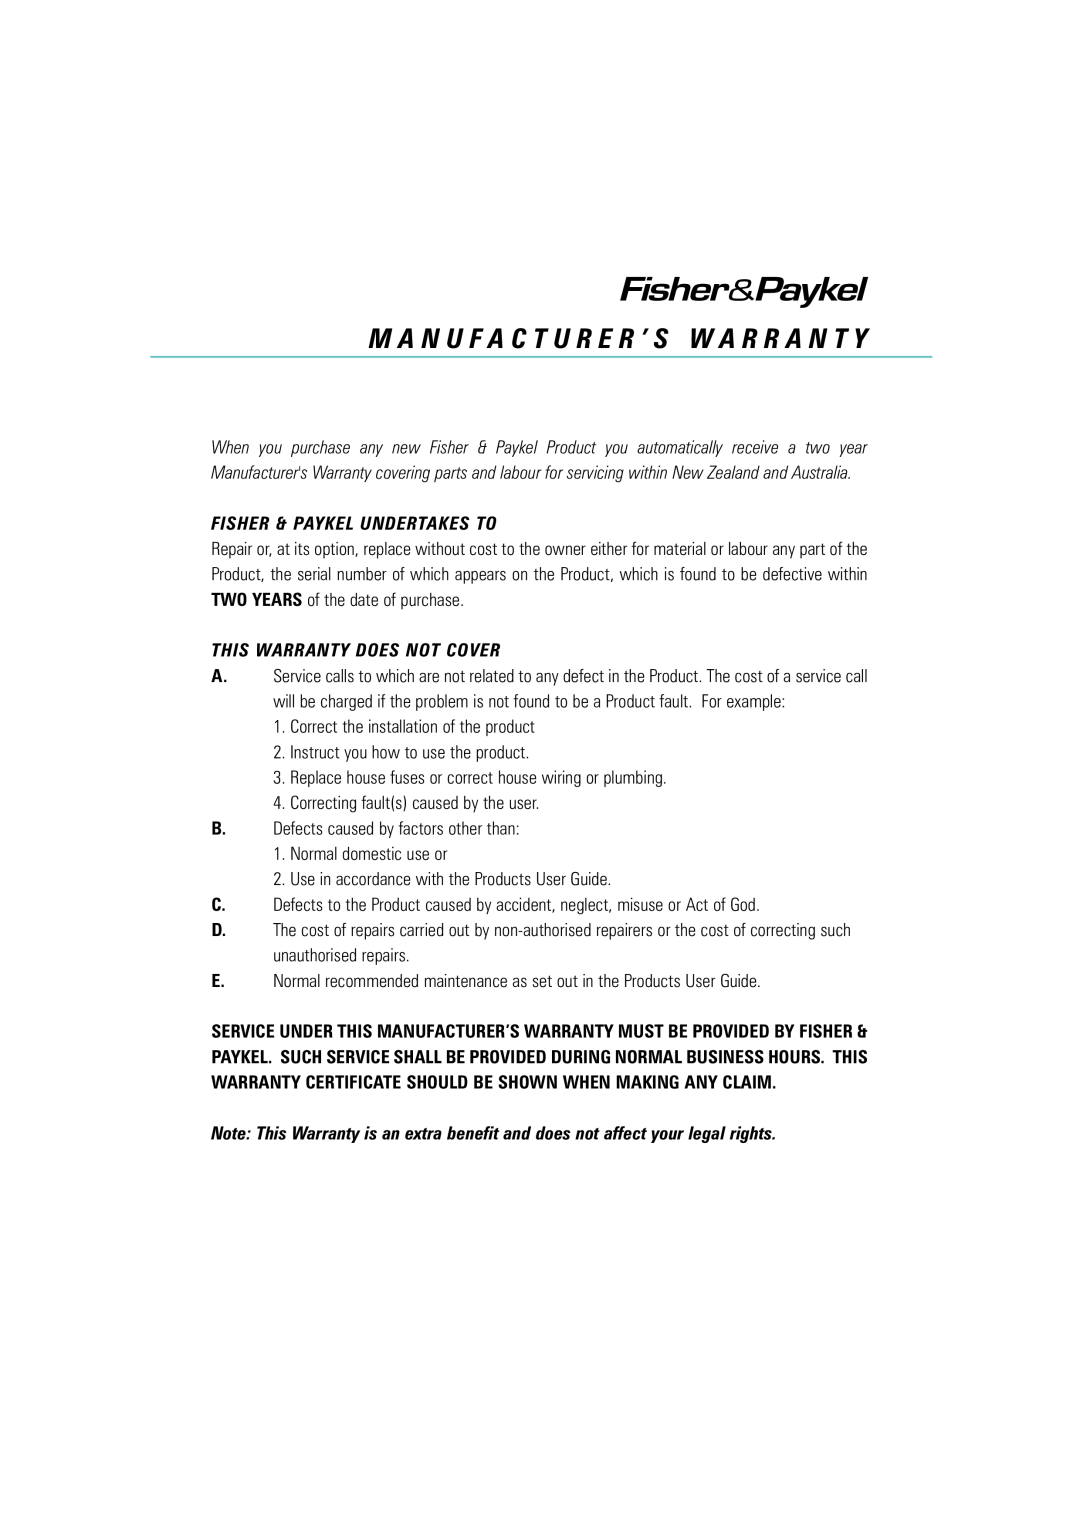 Fisher & Paykel Titan manual M A N U F A C T U R E R ’ S W A R R A N T Y, Fisher & Paykel Undertakes To 